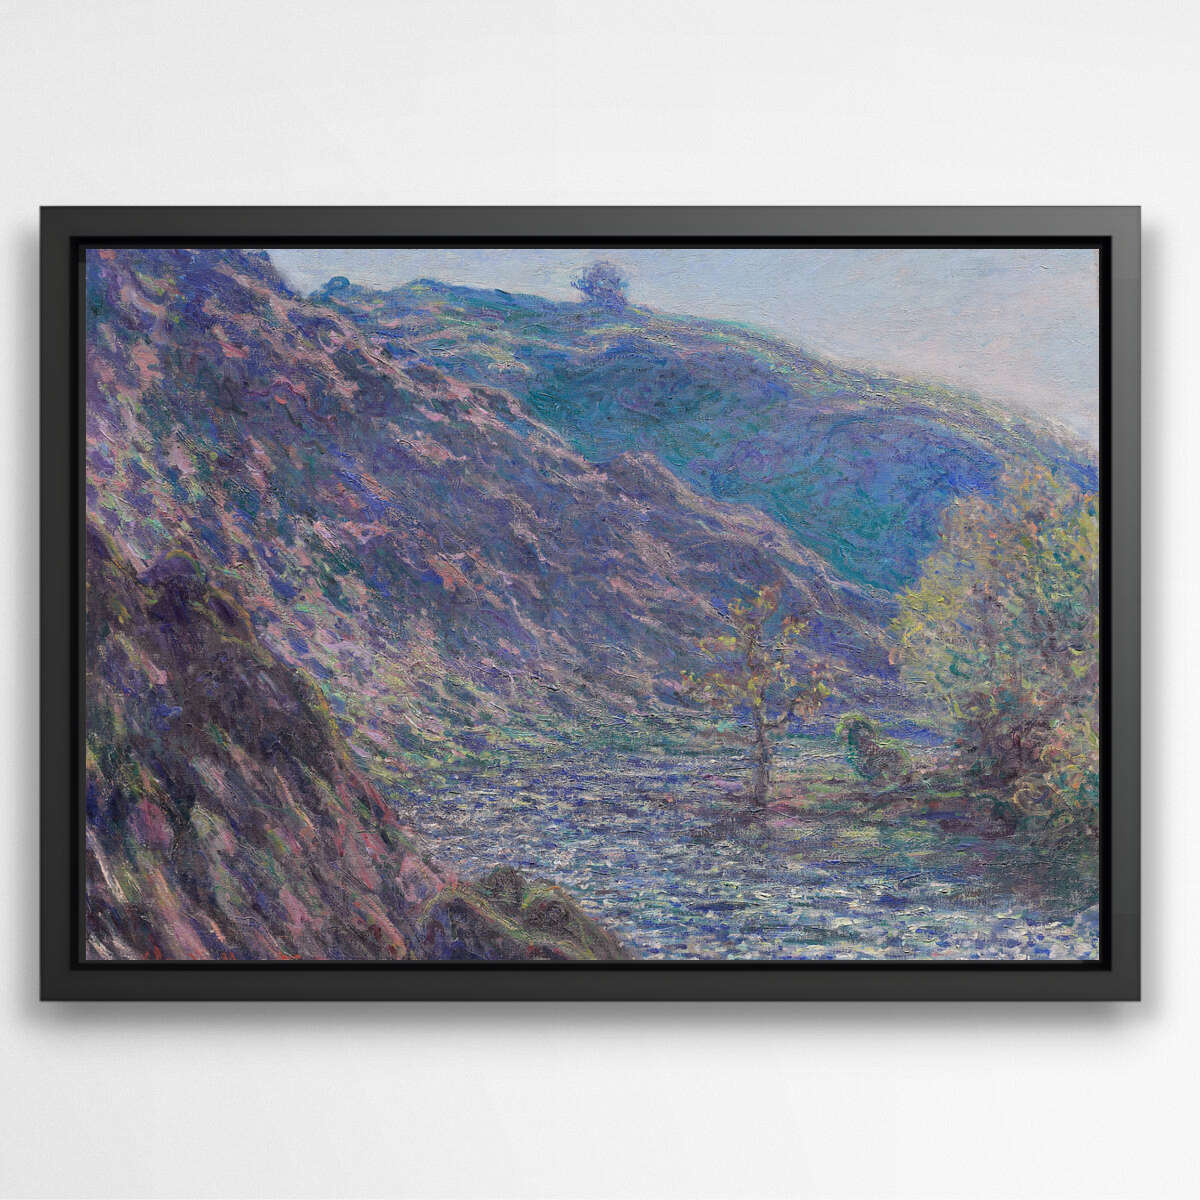 The Petite Creuse River by Claude Monet | Claude Monet Wall Art Prints - The Canvas Hive